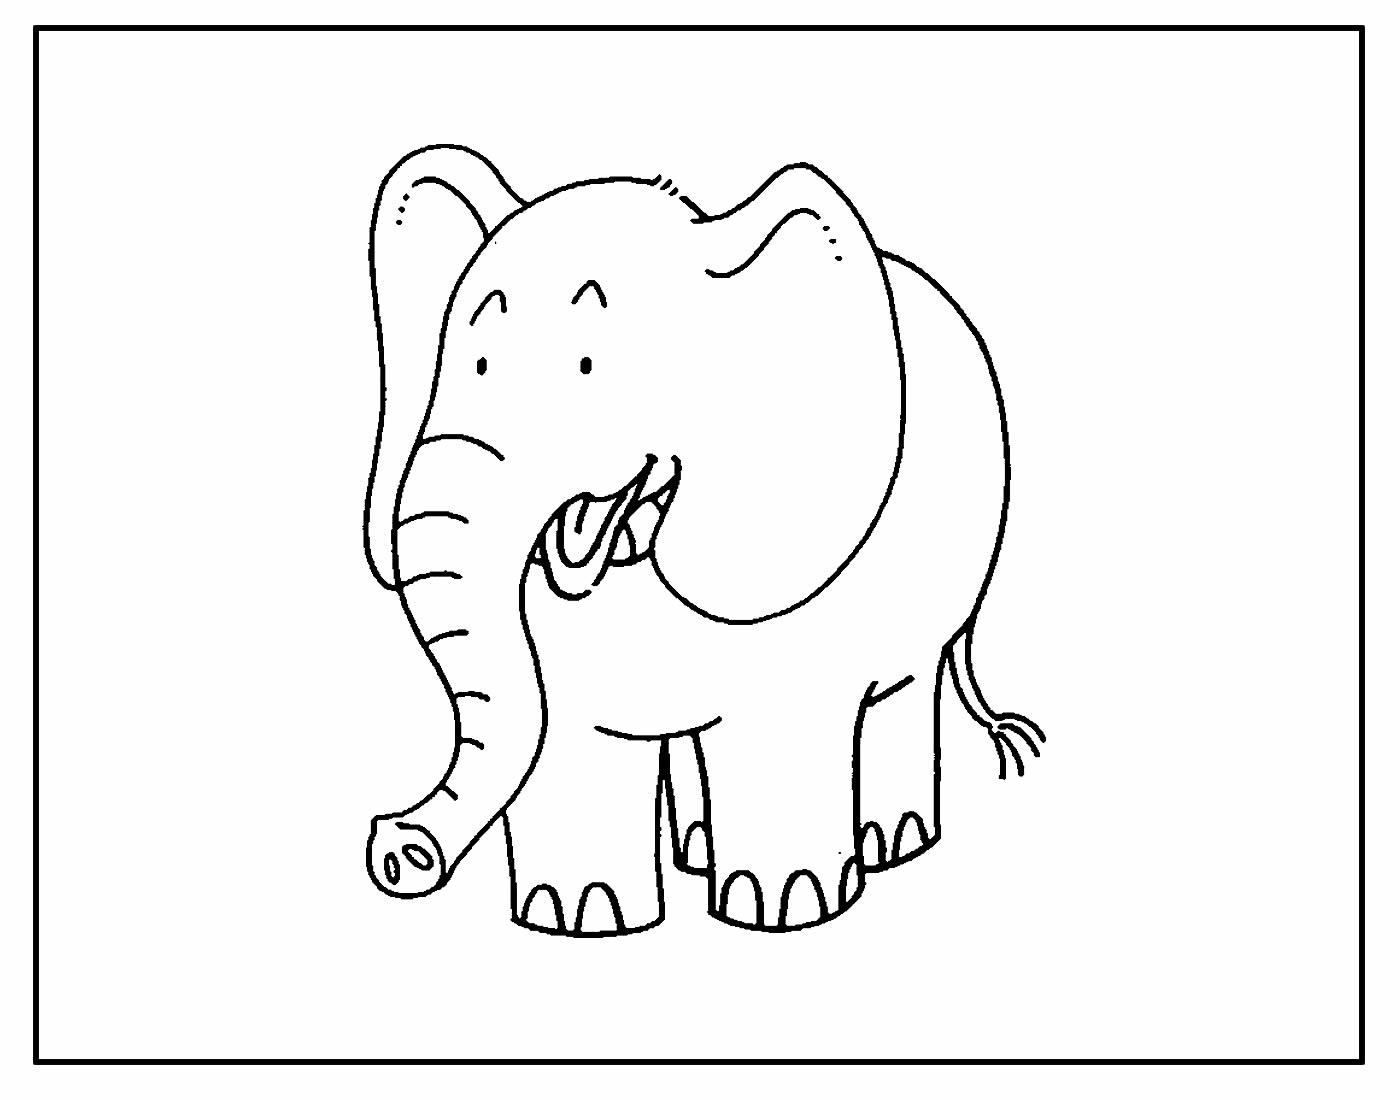 Página para colorir de Elefante